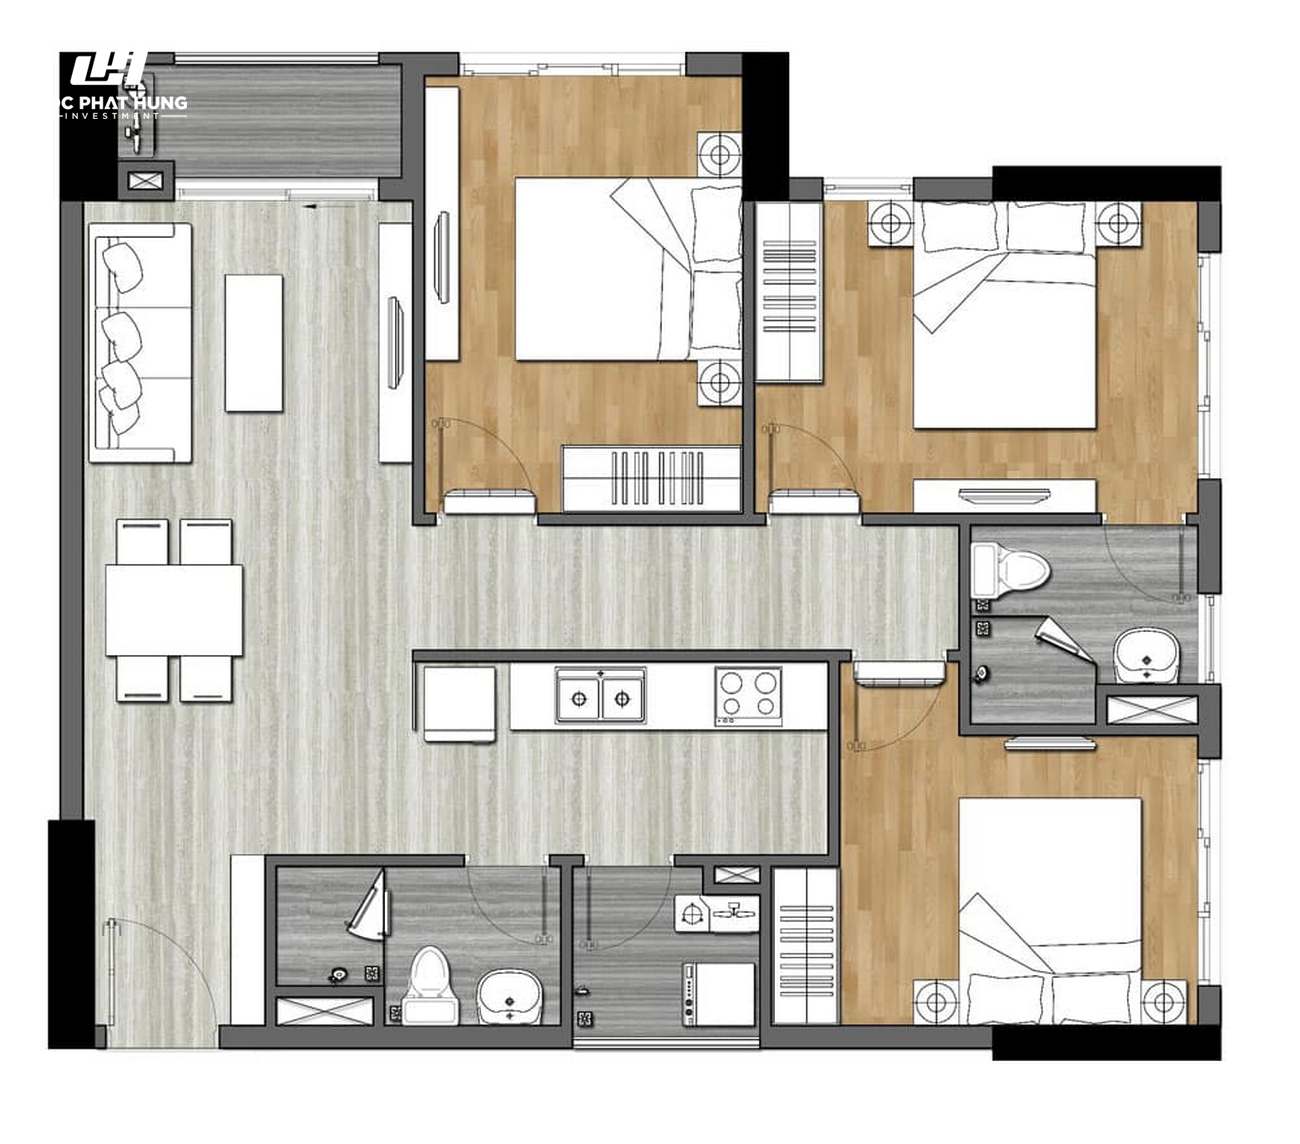 Thiết kế dự án căn hộ New Galaxy Dĩ An Bình Dương Đường Đường Thống Nhất chủ đầu tư Hưng Thịnh - Loại 3 phòng ngủ